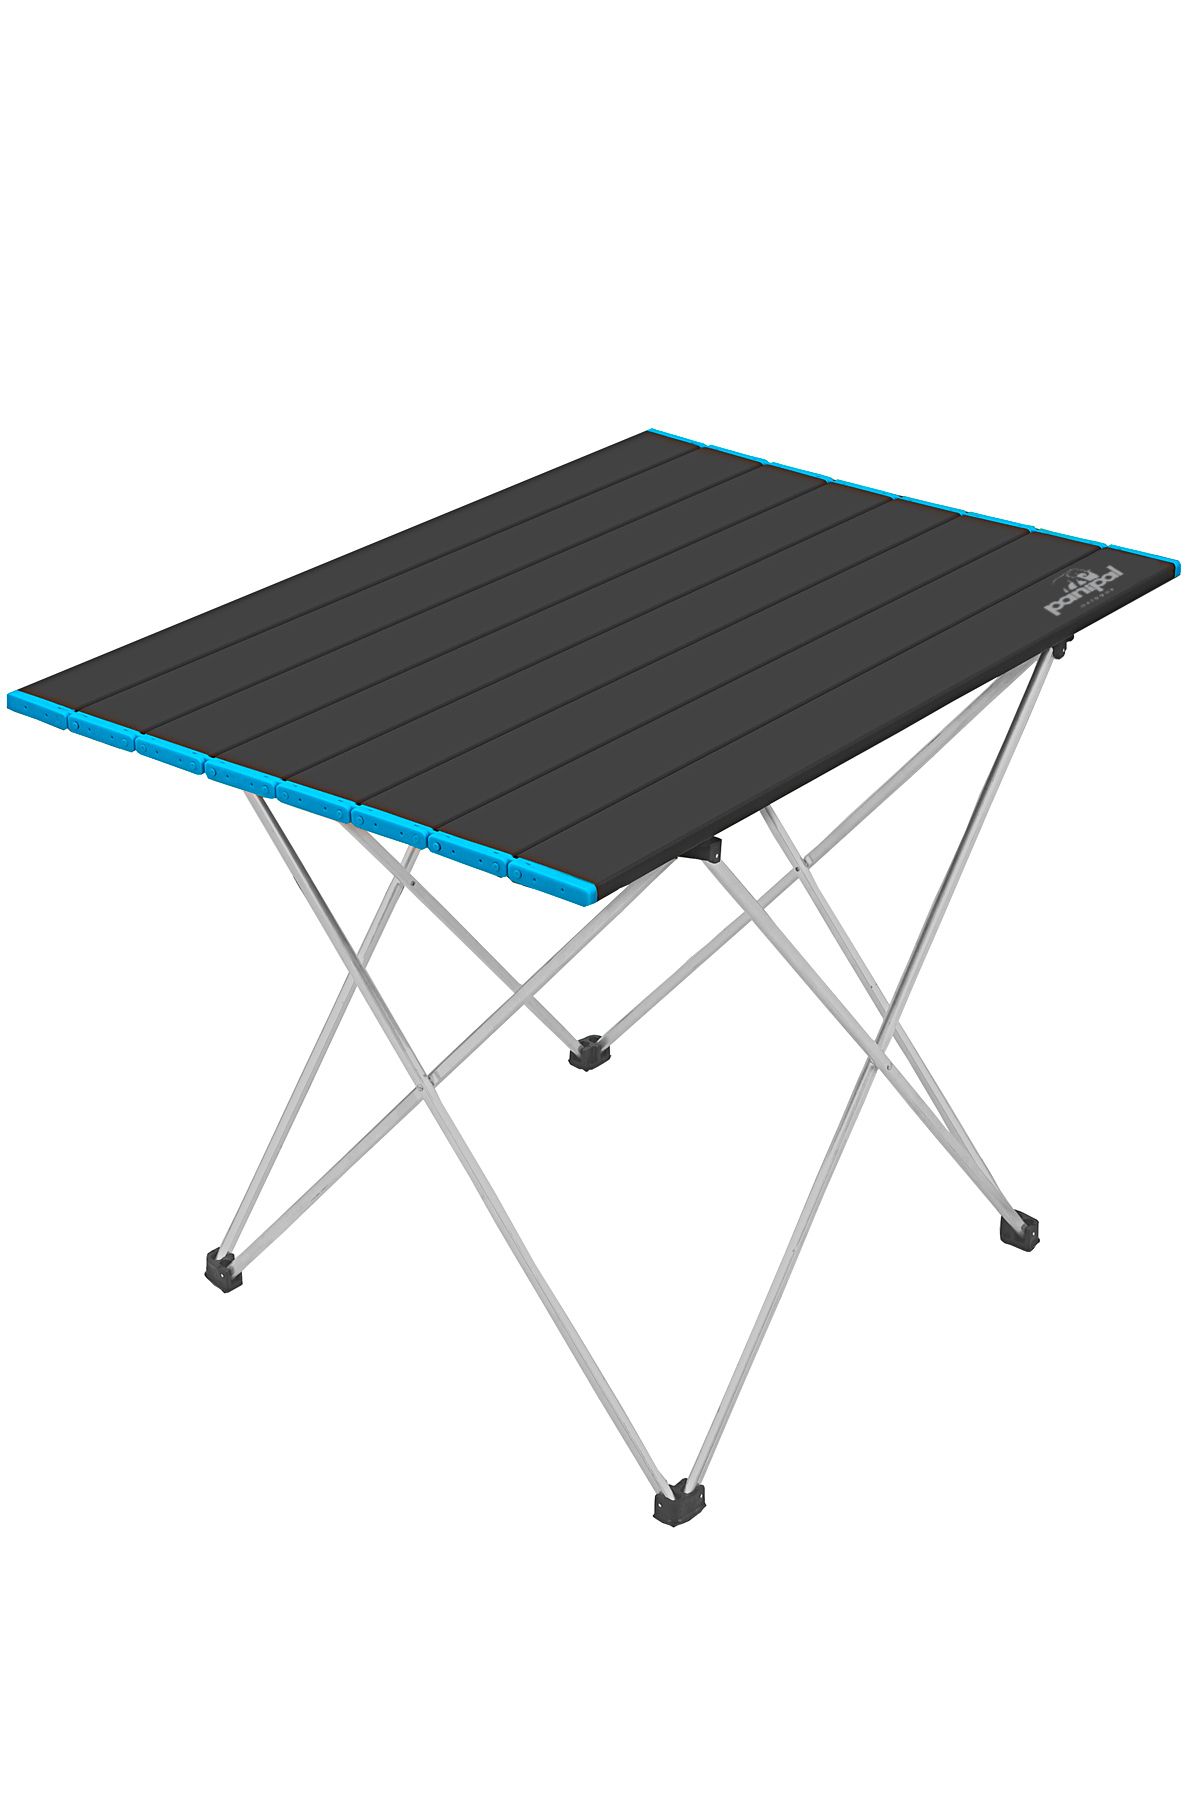 TuruncuFil Alüminyum, Omuz Askılı, Katlanabilir Kamp ve Piknik Masası M47x66x51 cm